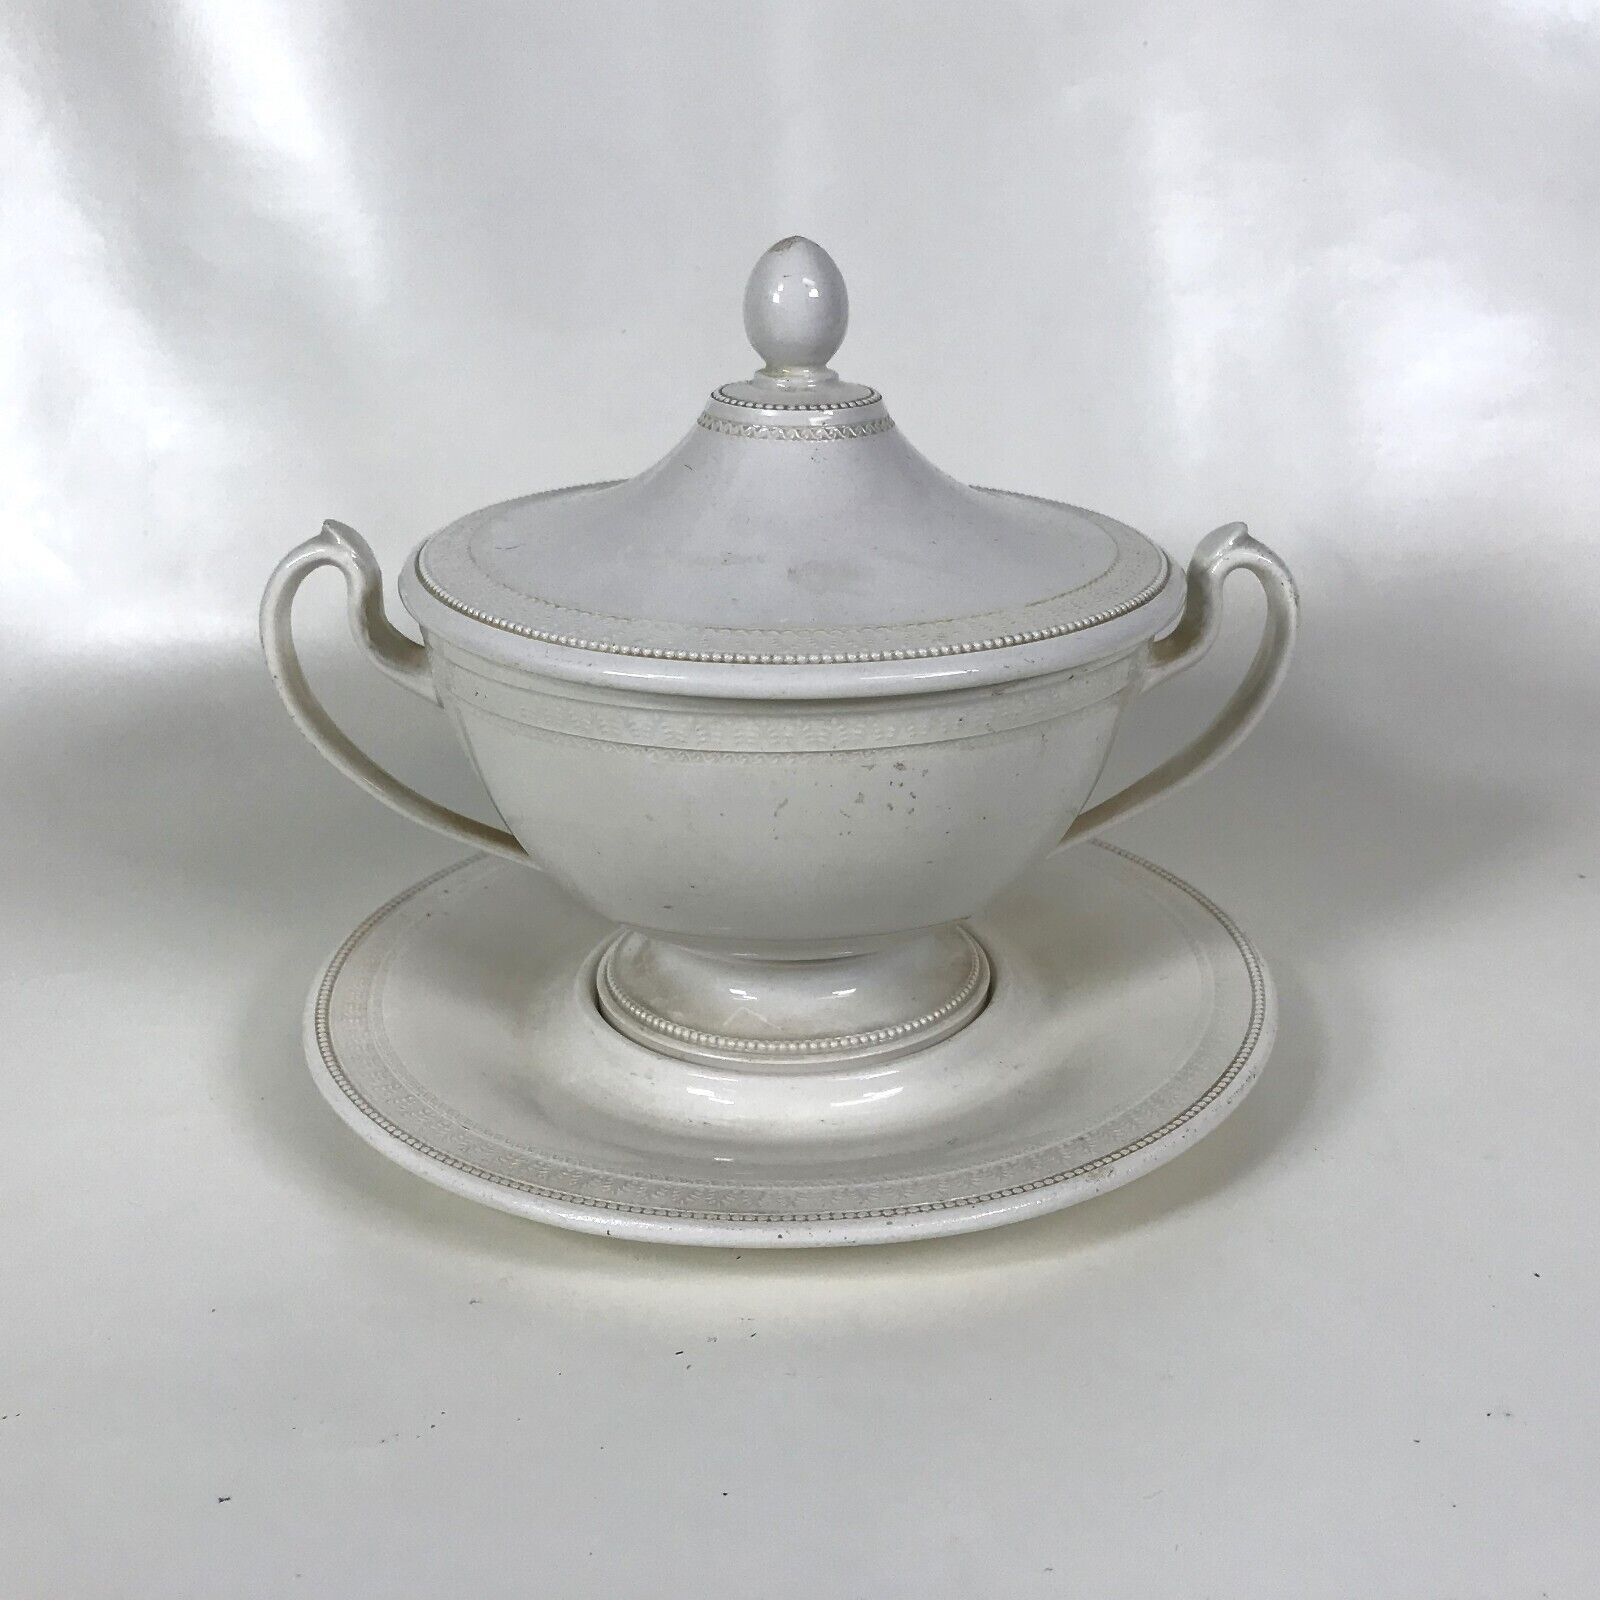 Circa 1790-1820 Creamware  Sauce Tureen with Underplate